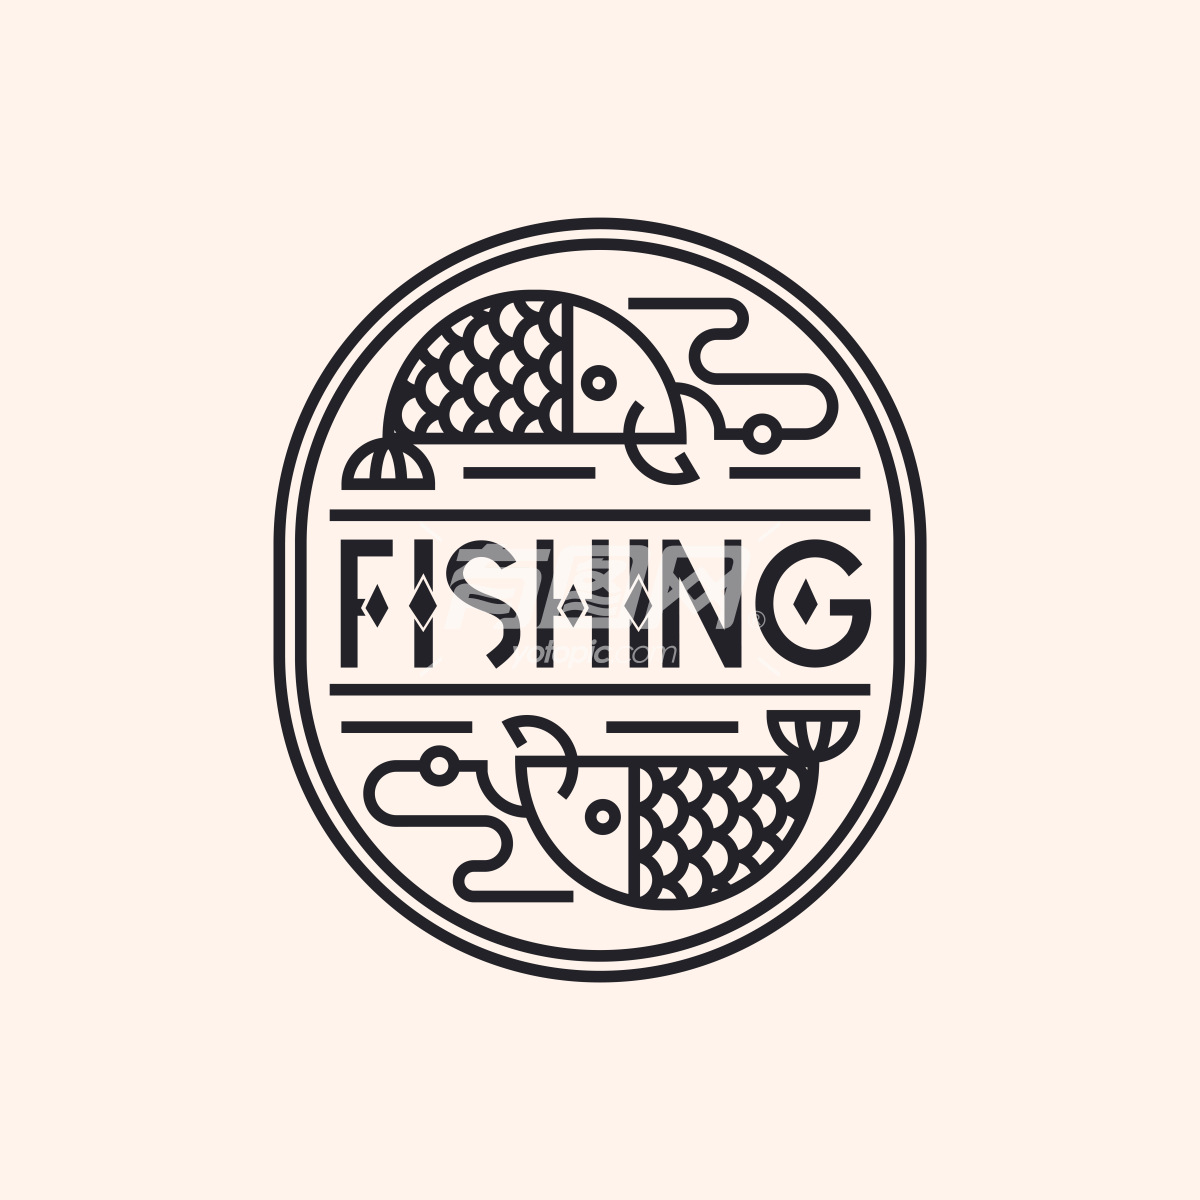 鱼造型设计的公司logo